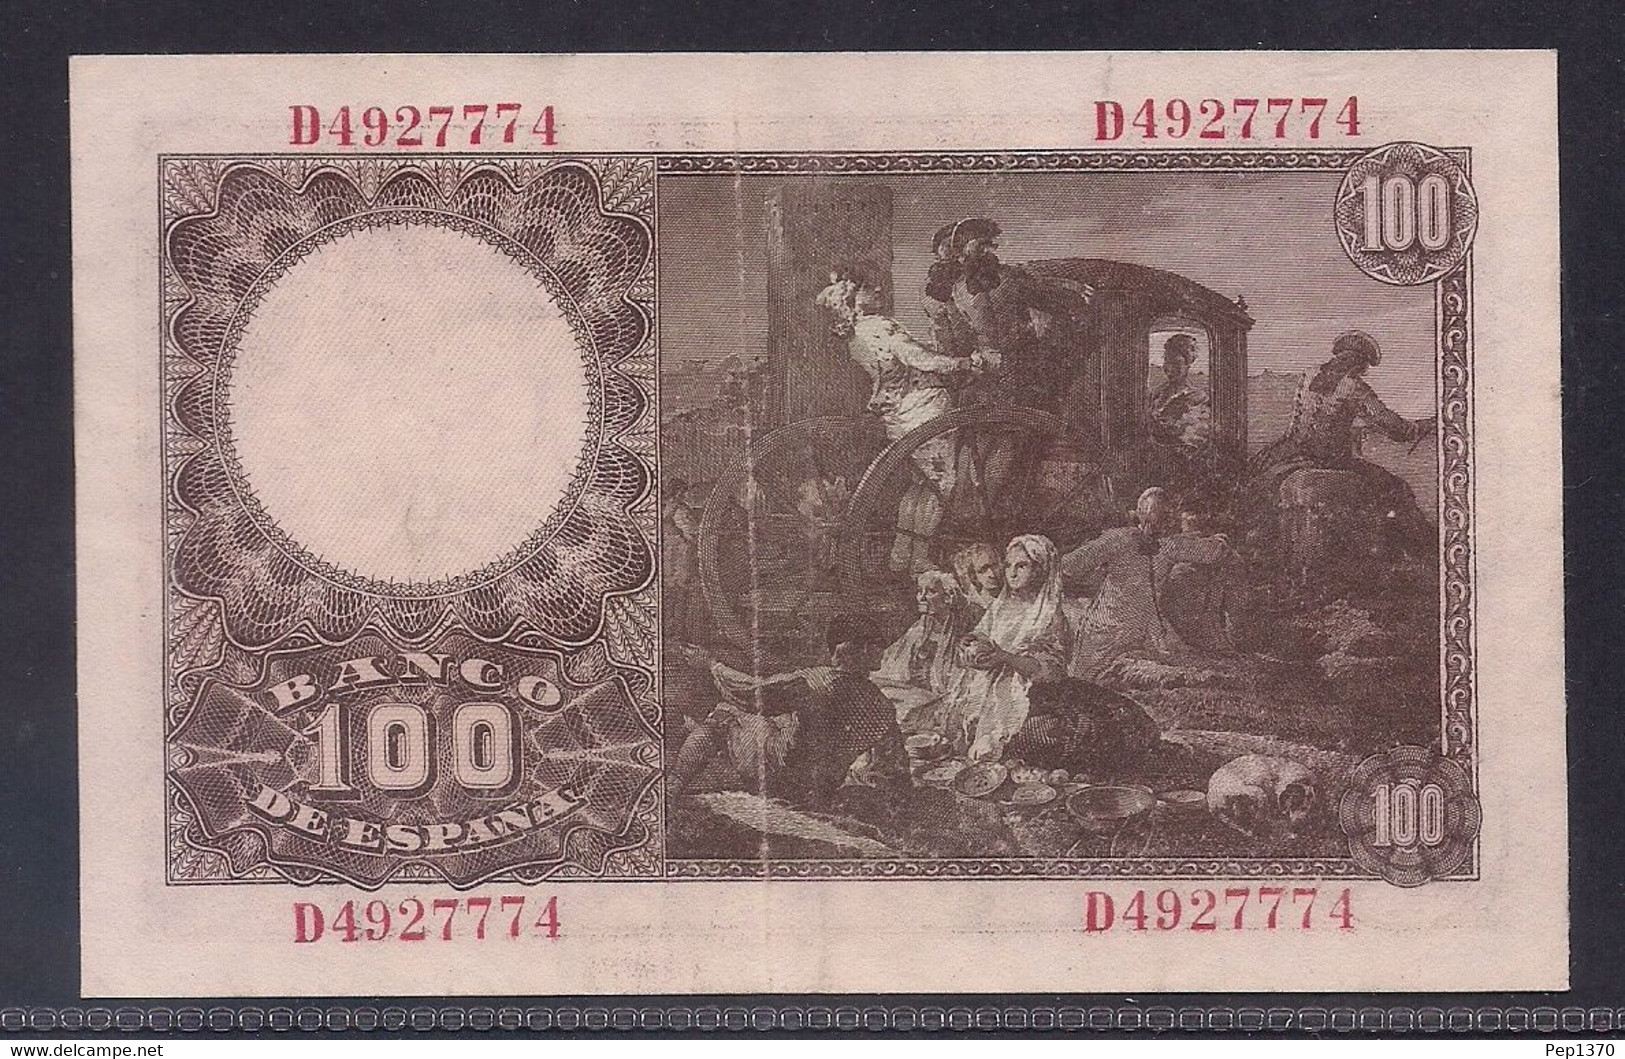 ESPAÑA - BILLETE DE 100 PESETAS DE 1948 DEDICADO A FRANCISCO BAYEU - EXCELENTE - 100 Peseten